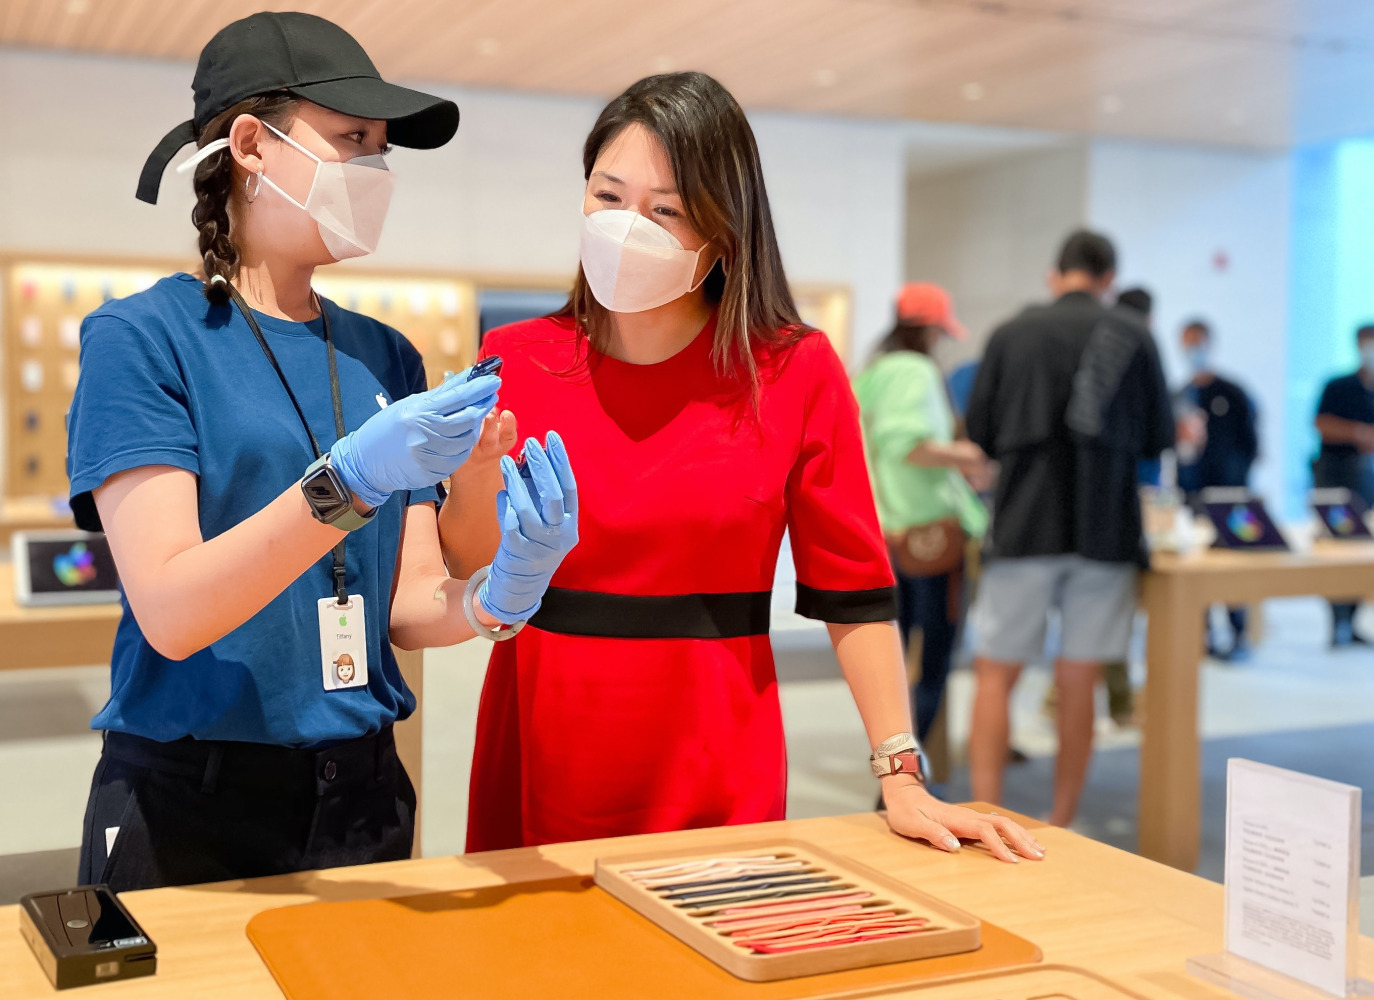 Apple spesialis menjelaskan produk kepada pelanggan di Store saat pandemi COVID-19